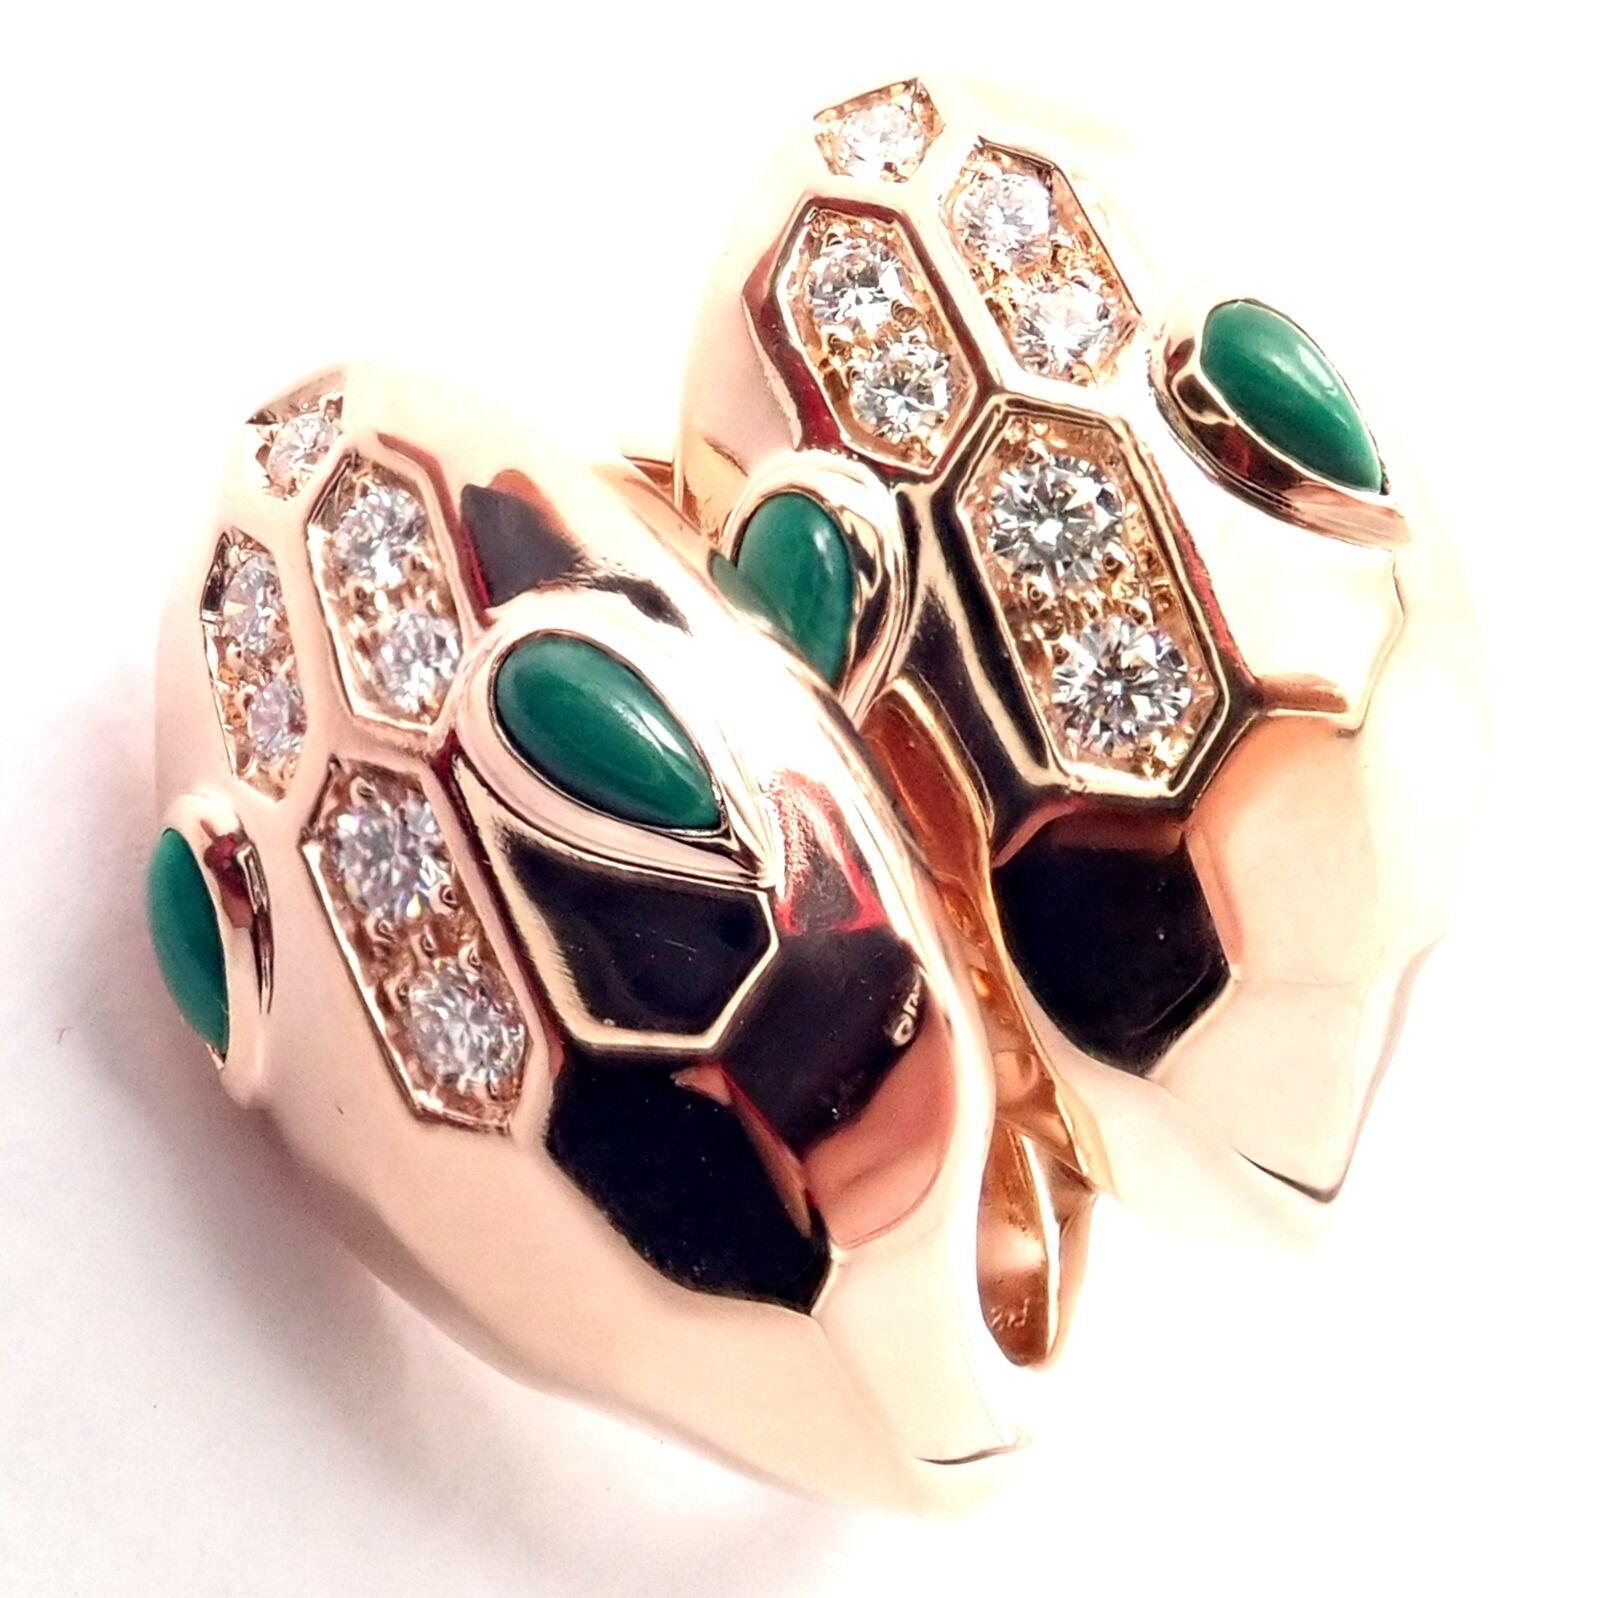 Brilliant Cut Bulgari Bvlgari Serpenti Diamond Malachite Rose Gold Earrings